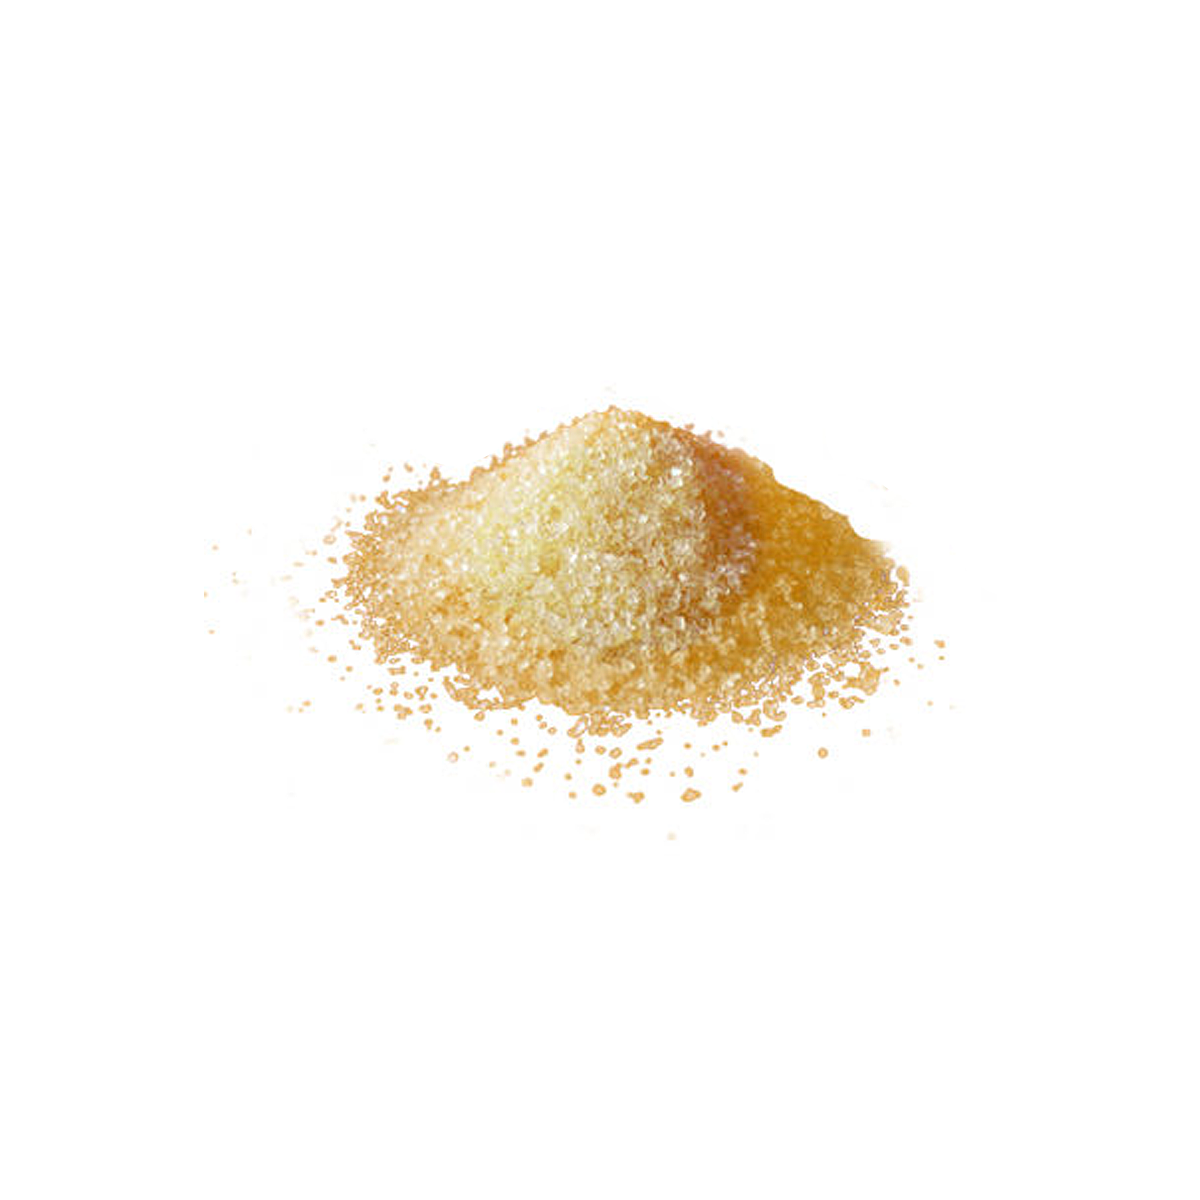 Morceaux de sucre de canne blond vrac bio Paraguay bocal consigné